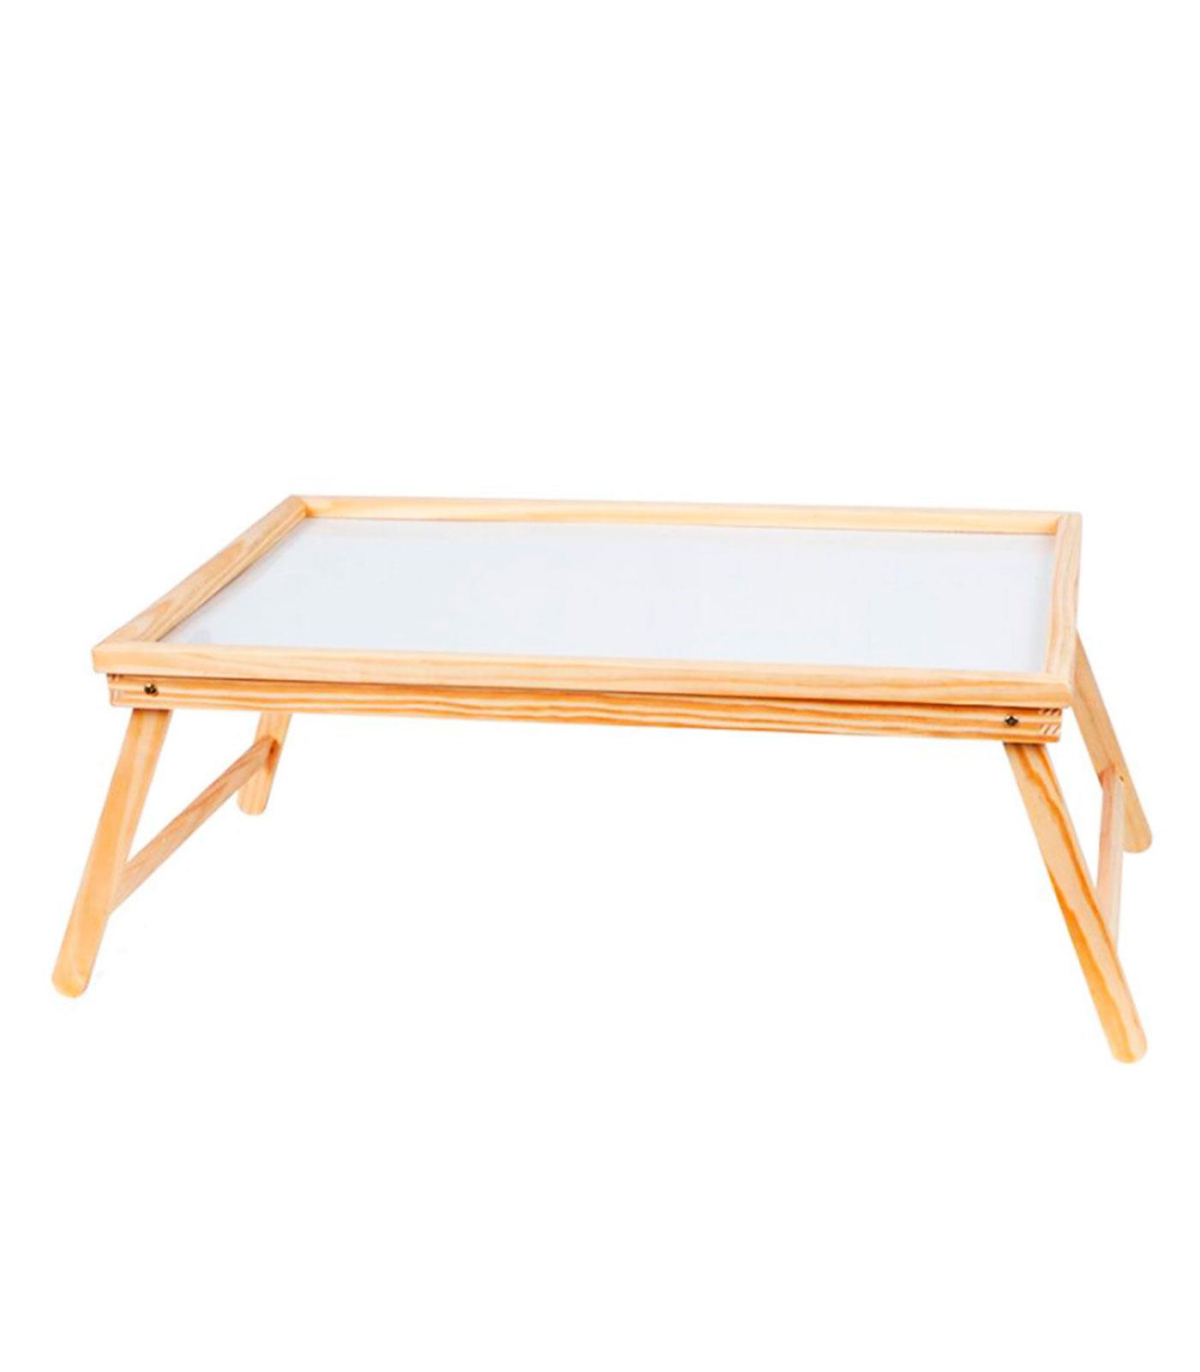 de cama plegable de madera 50 31 x 21 cm, mesa multiuso para desayuno con patas plegables, ligera y resistente, fondo